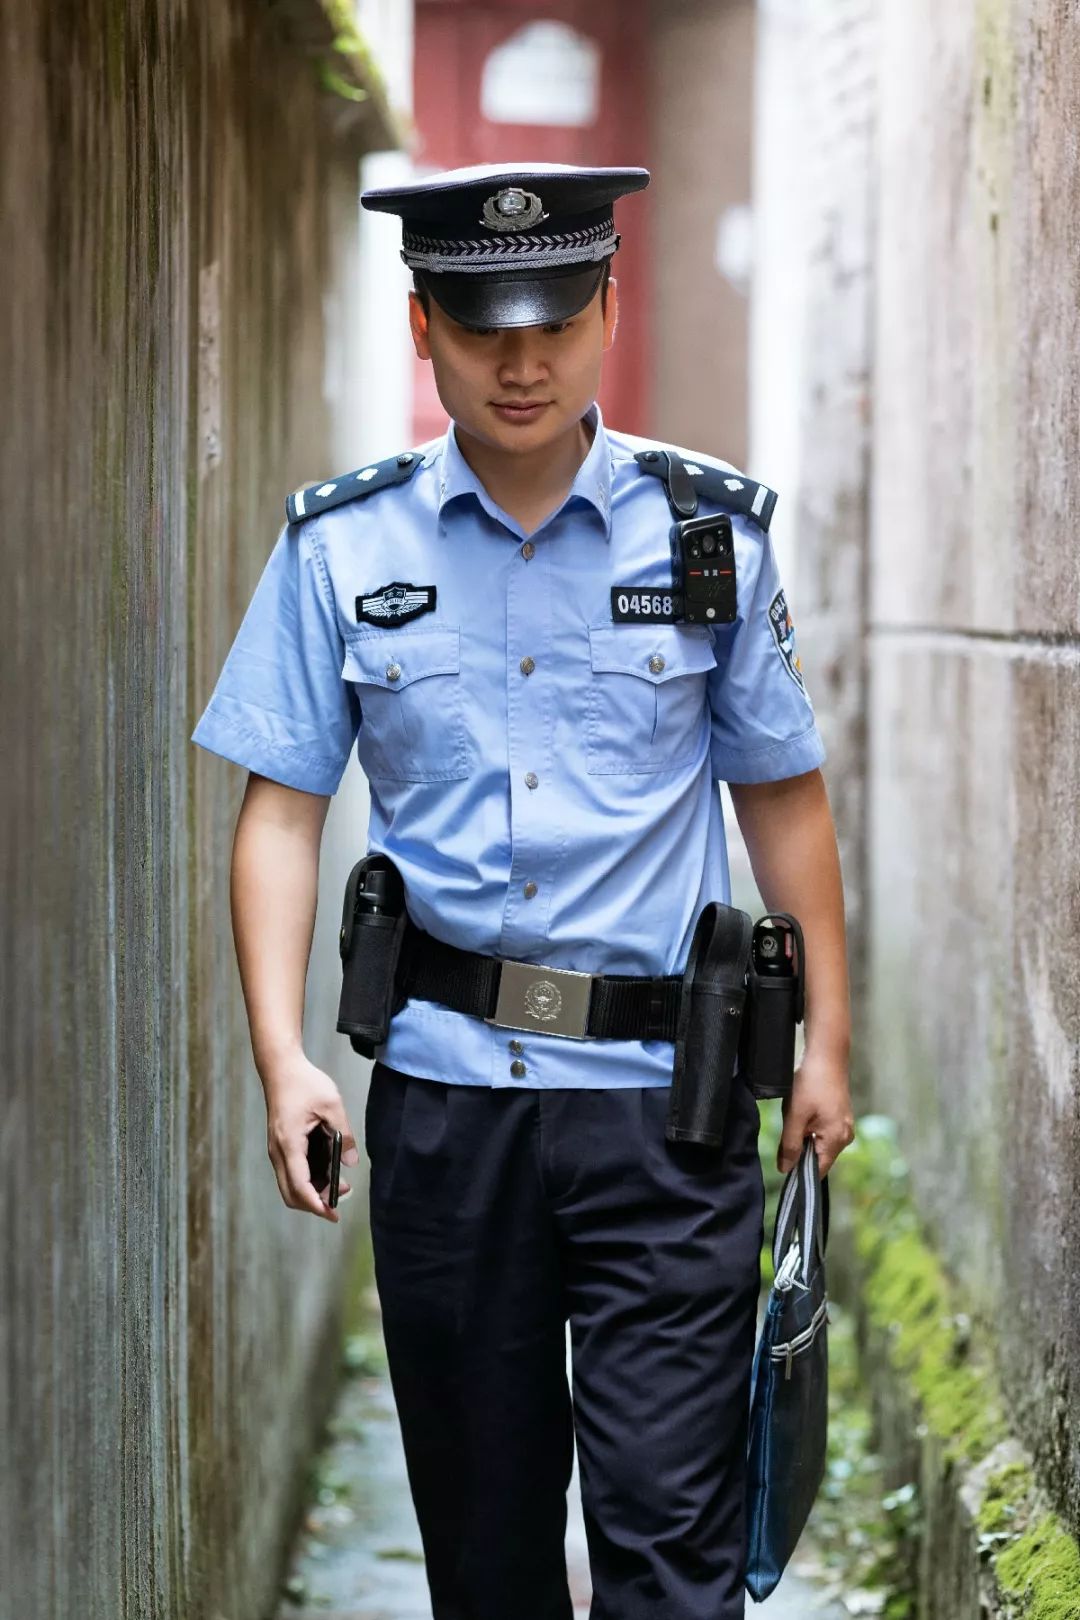 胡鹏,2013年11月参加公安工作,二级警司,从警以来一直在安顺市公安局